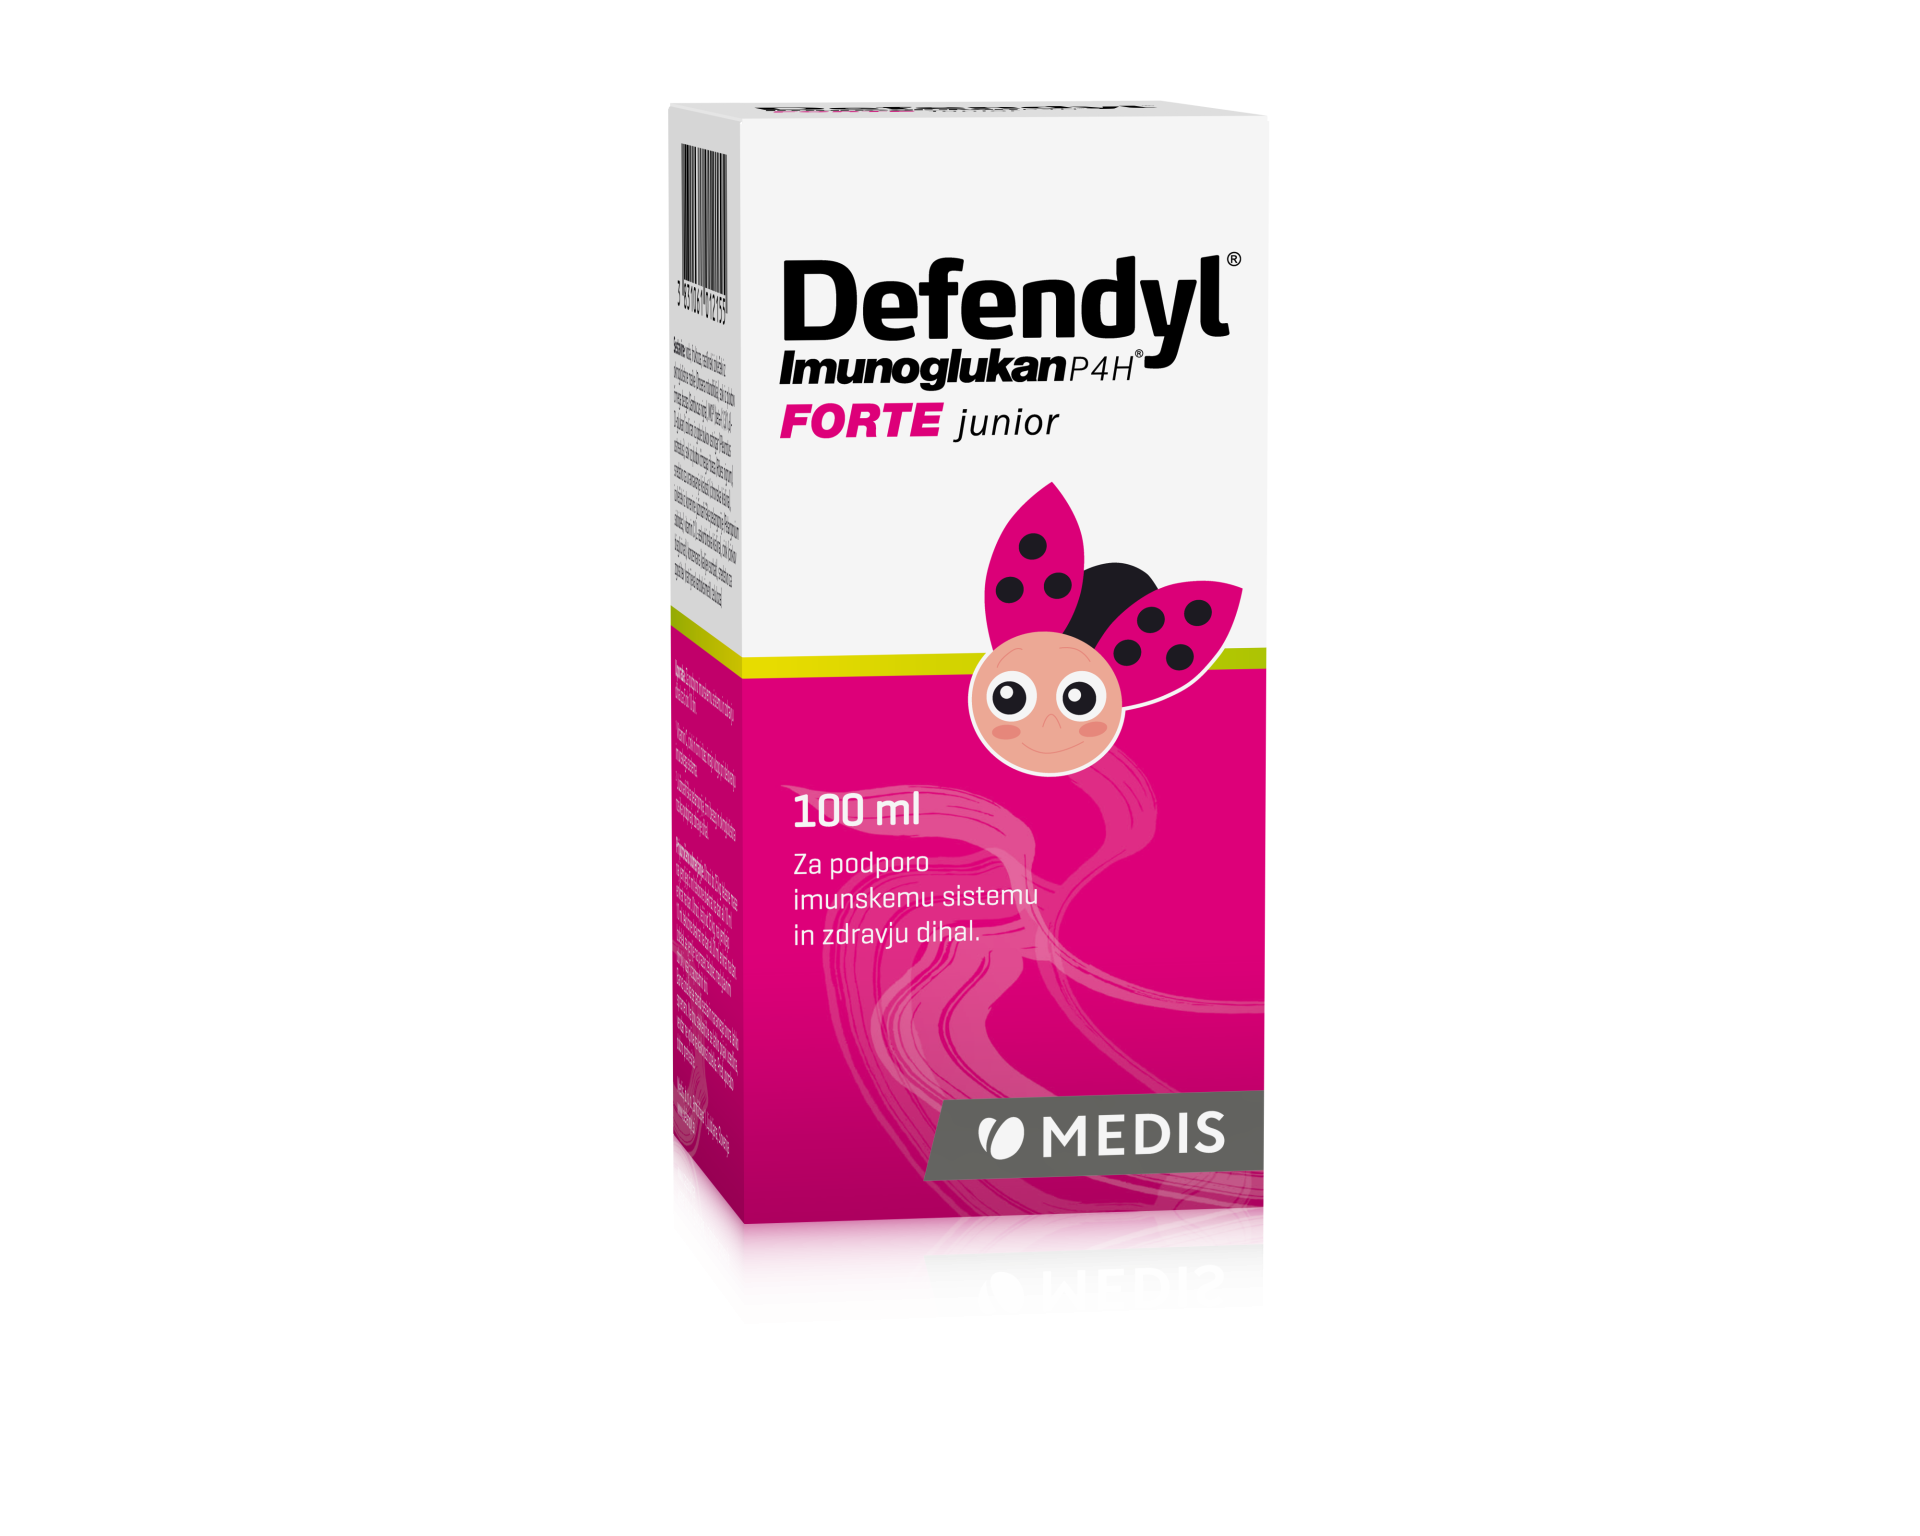 Defendyl-Imunoglukan P4H FORTE junior sirup, 100 ml